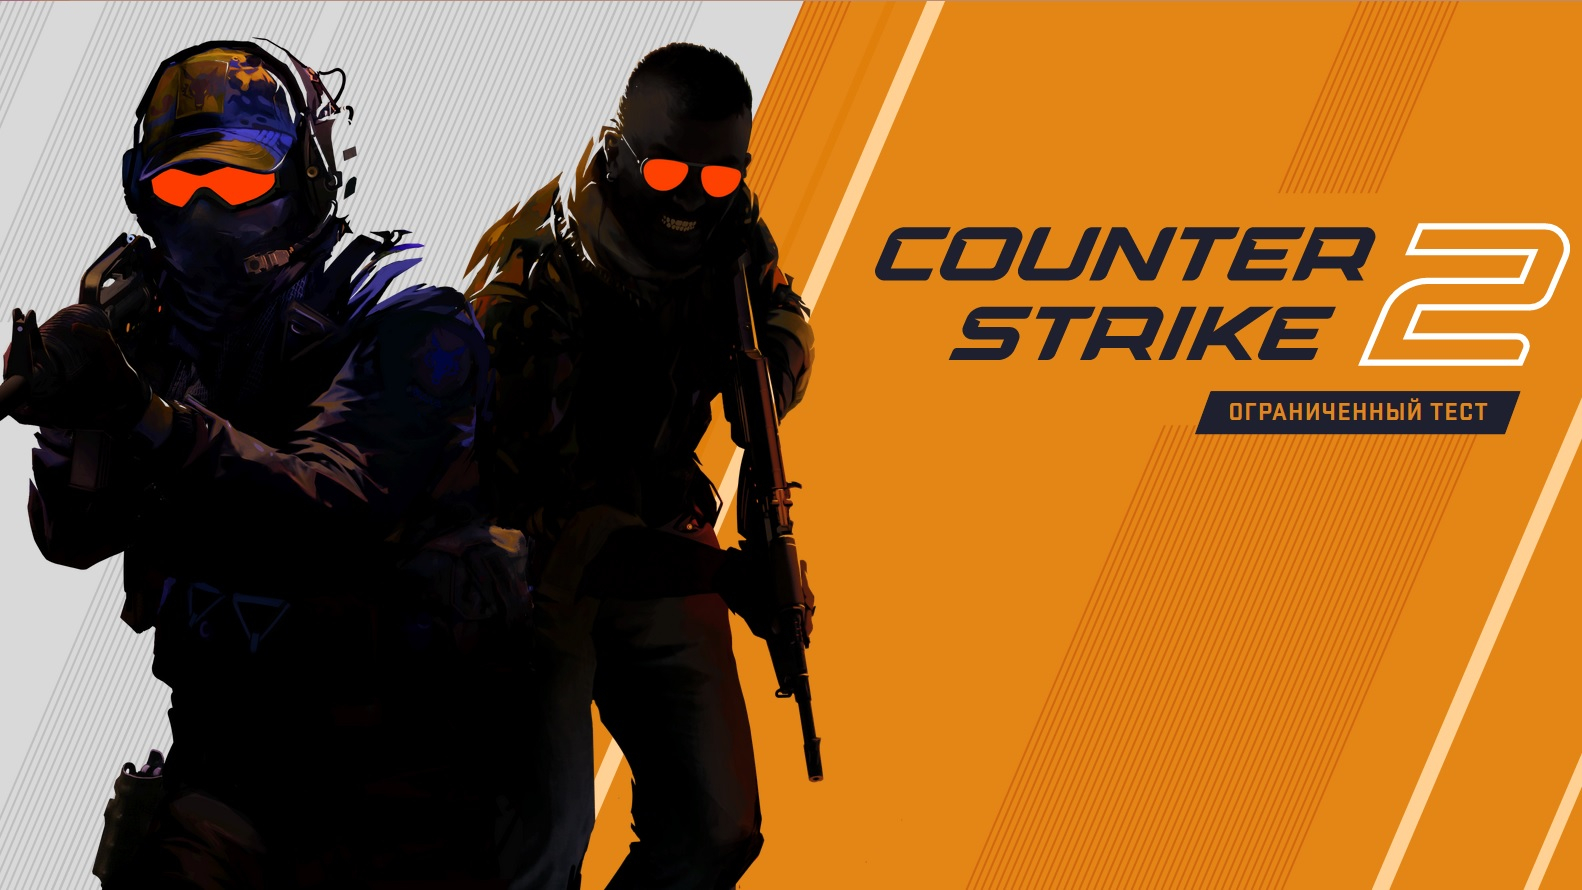 Valve представила Counter-Strike 2. Что ждет игроков в обновлении онлайн-хита